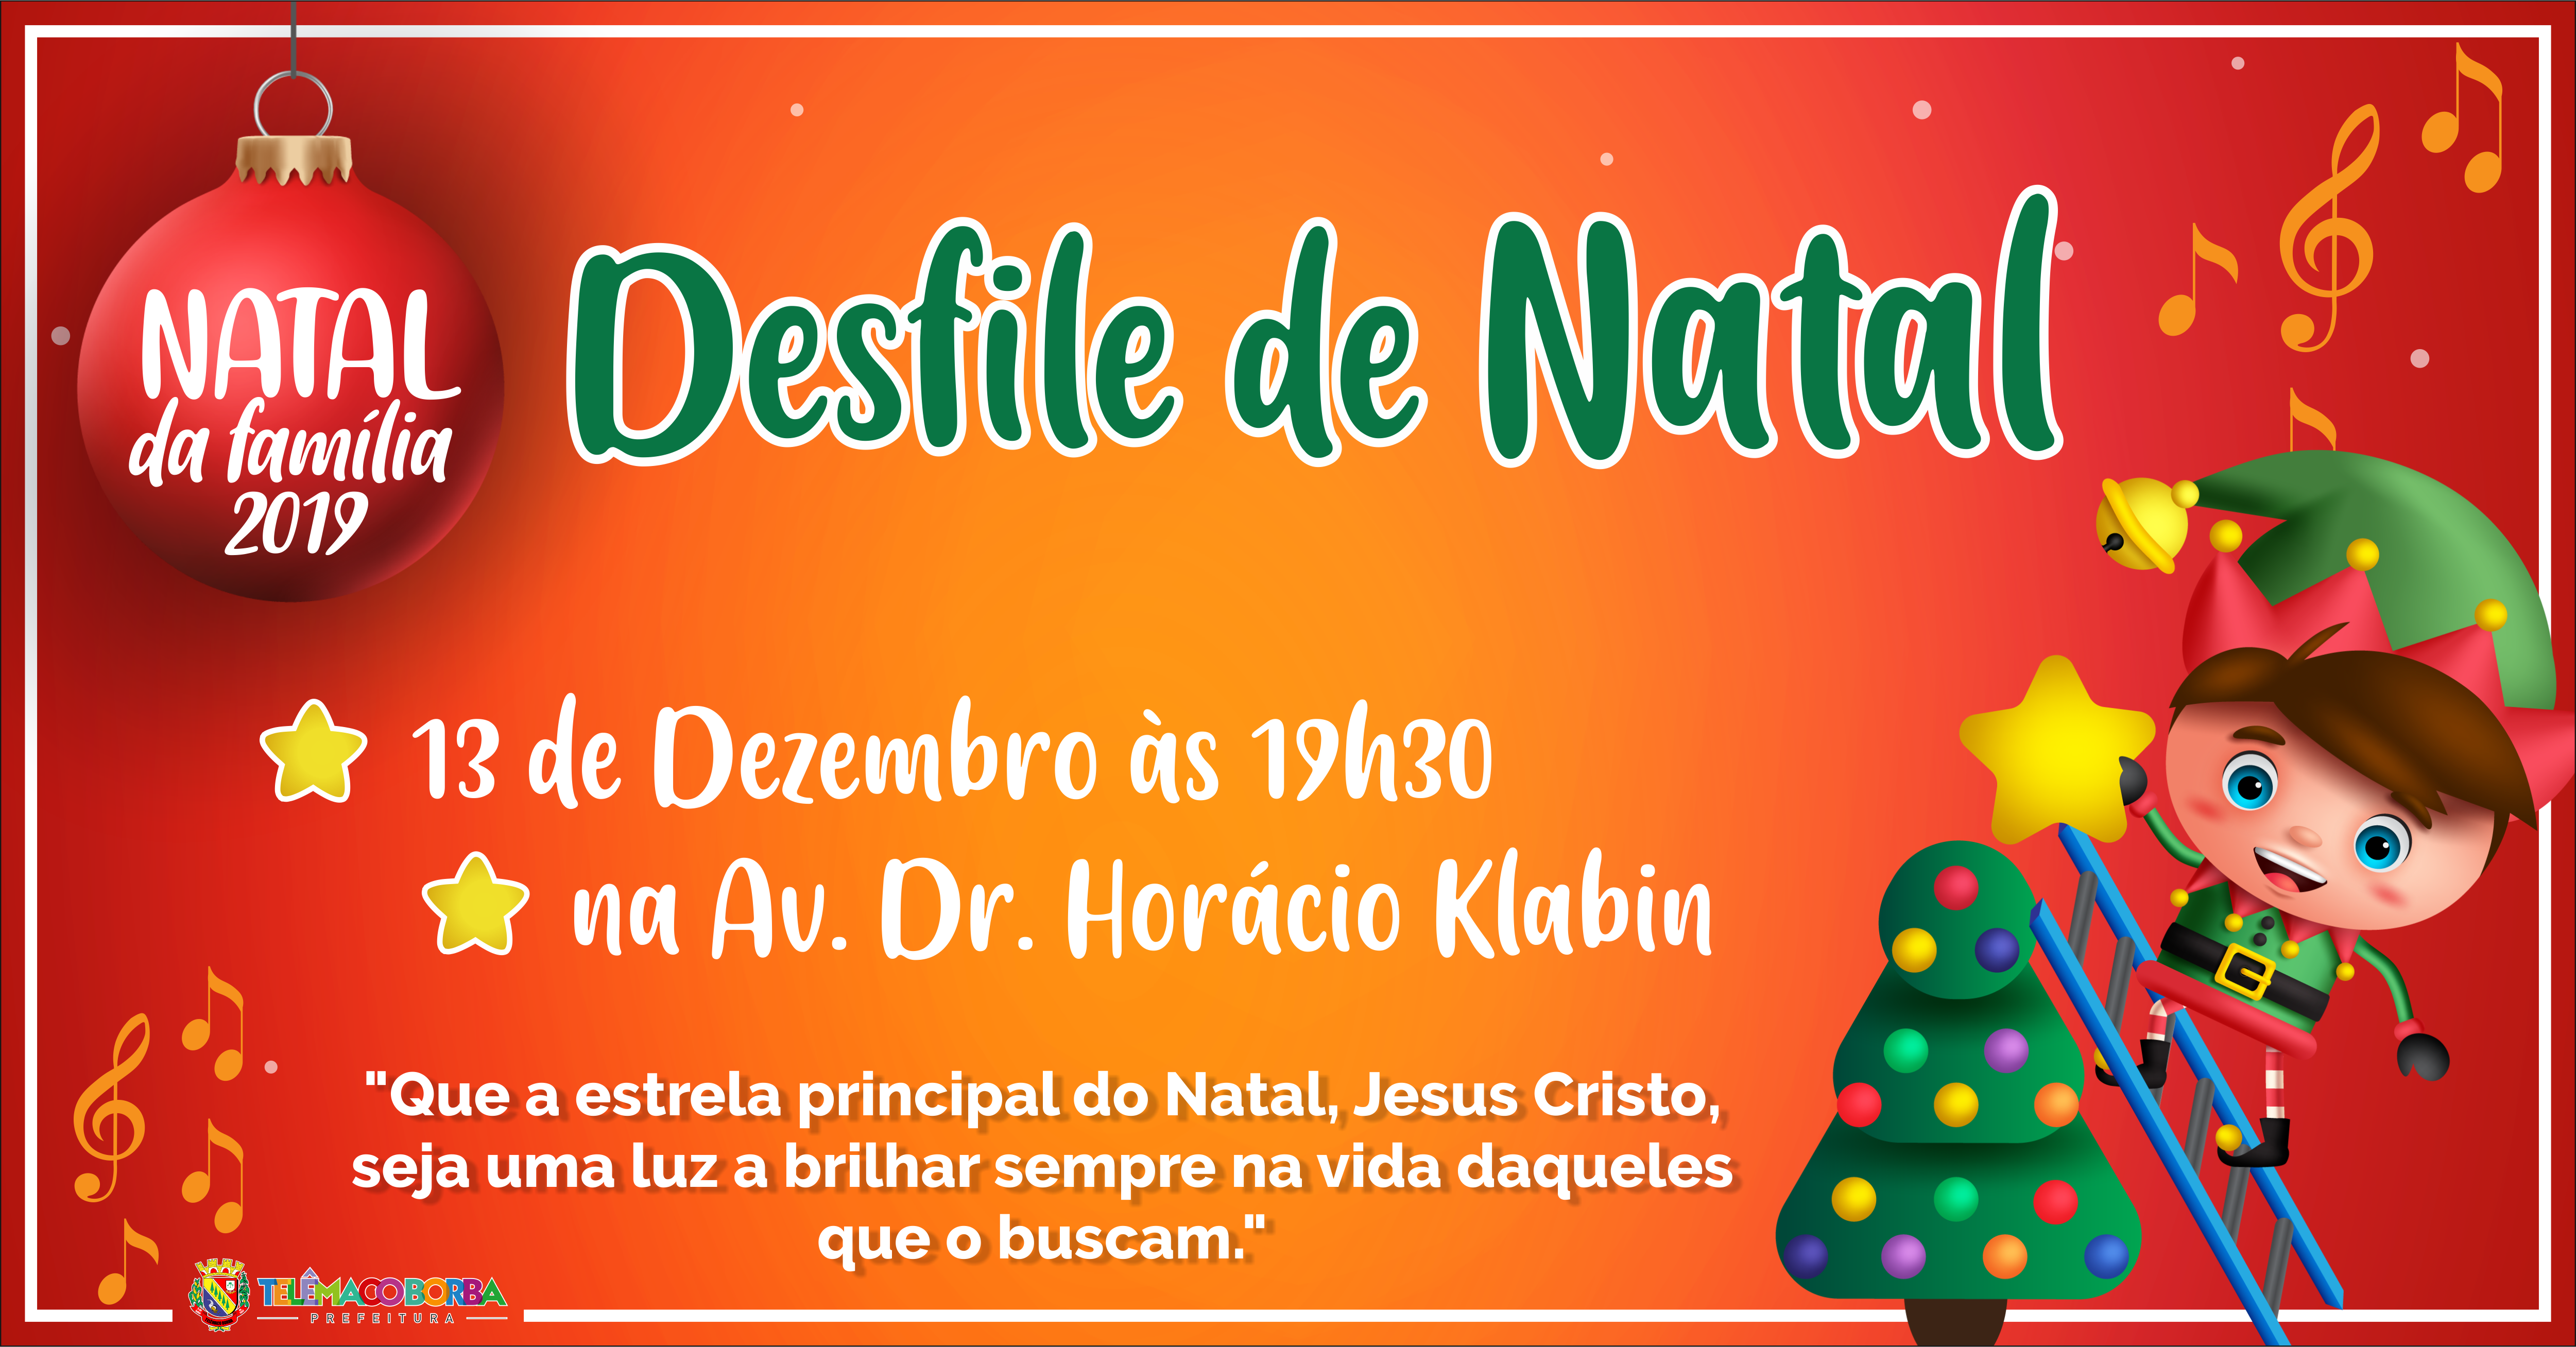 Prefeitura abre inscrição para entidades participarem do Desfile de Natal  2019 - Prefeitura de Telêmaco Borba